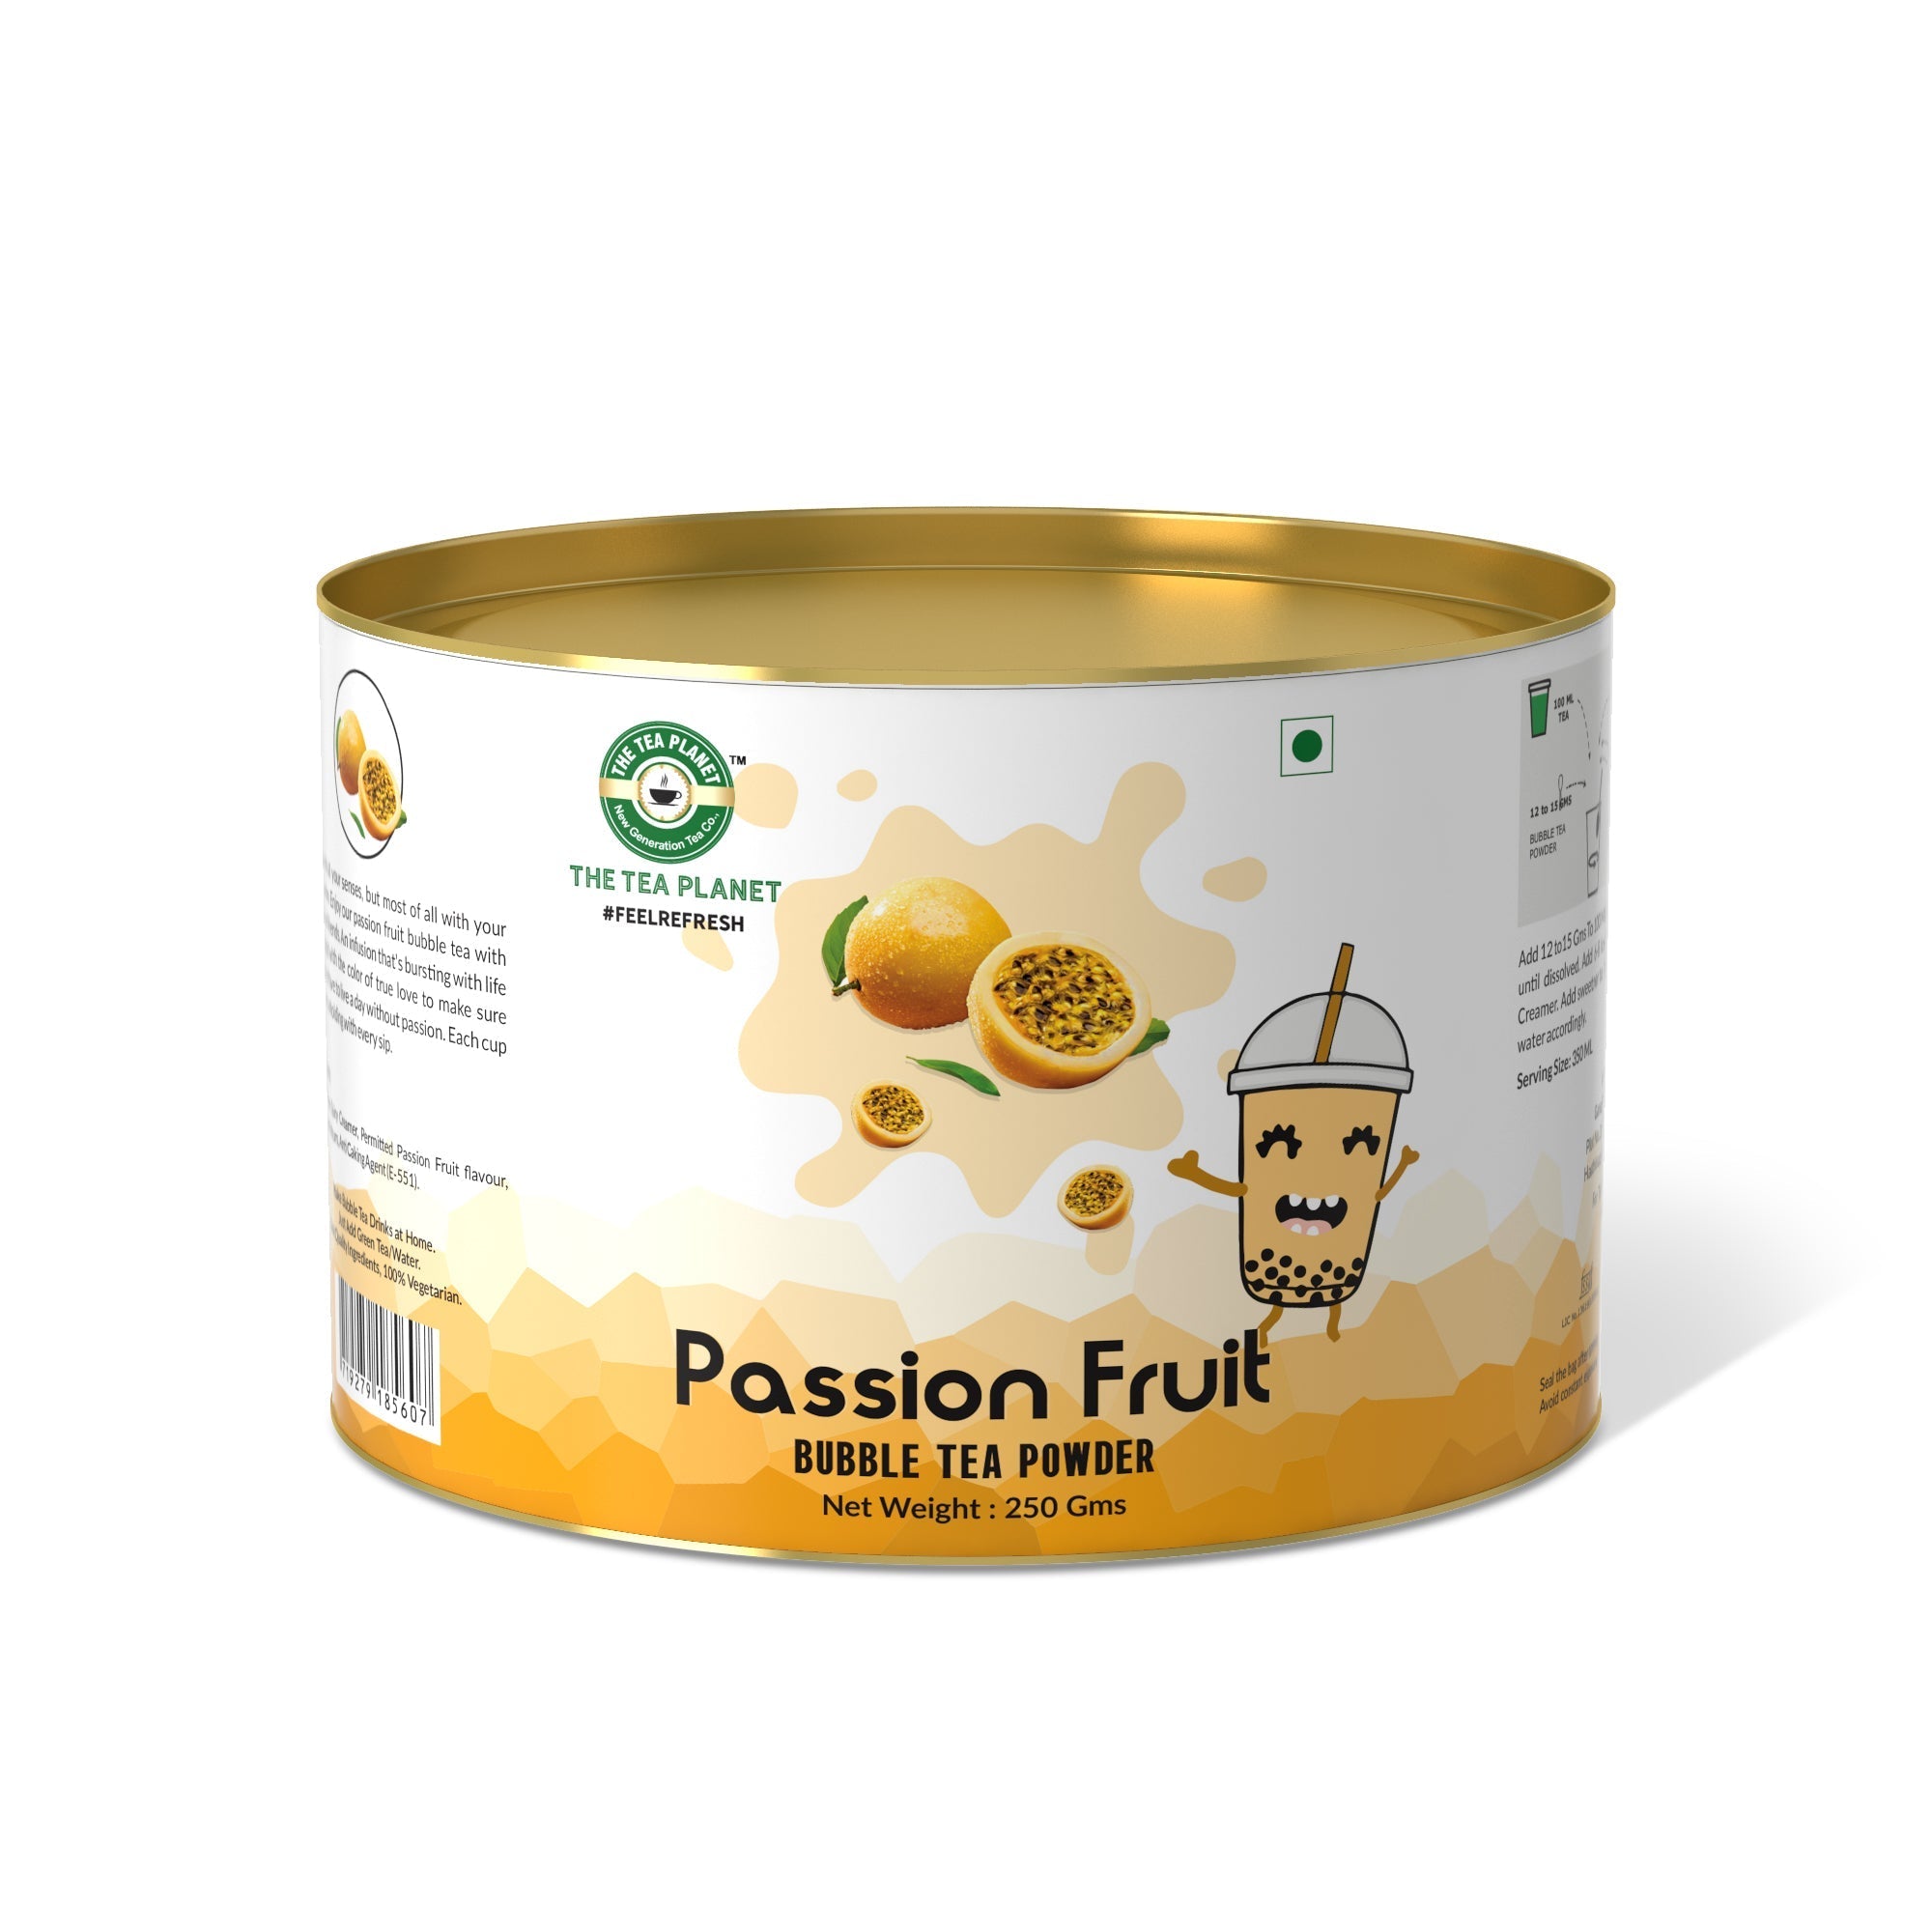 Passion Fruit Bubble Tea Premix - 400 gms